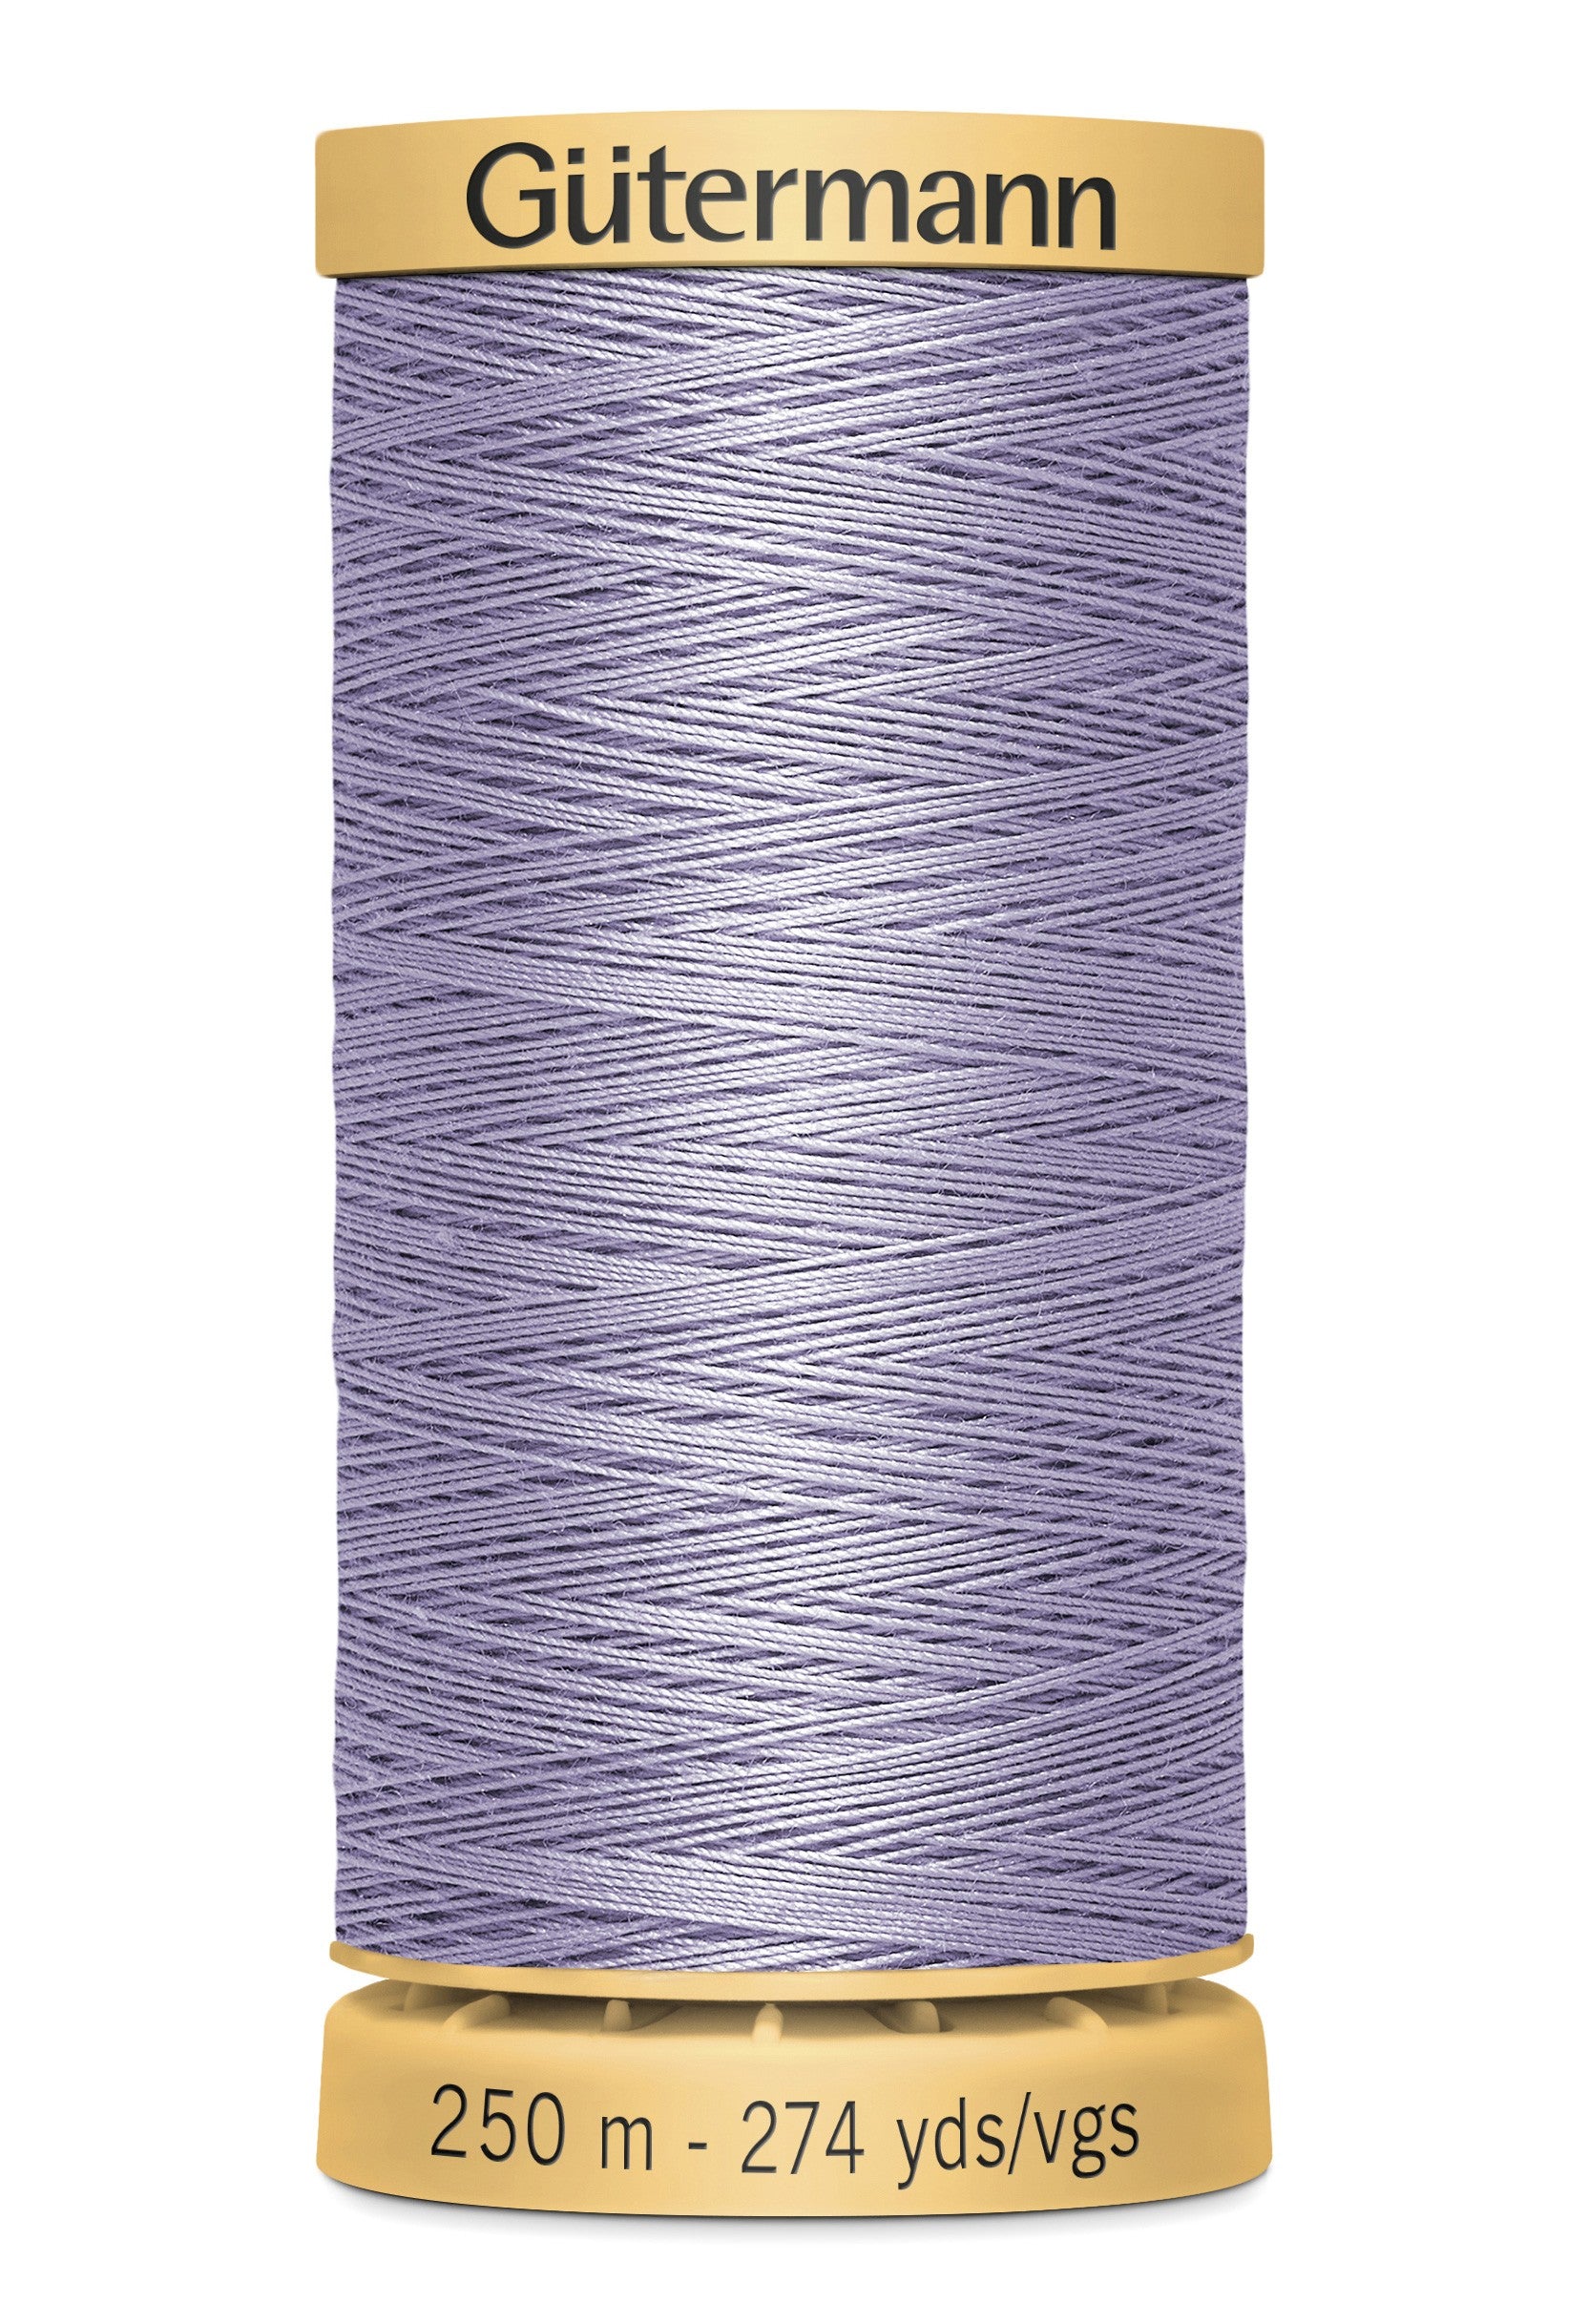 Gutermann Natural Cotton Thread 6080 Lavender  274 yd